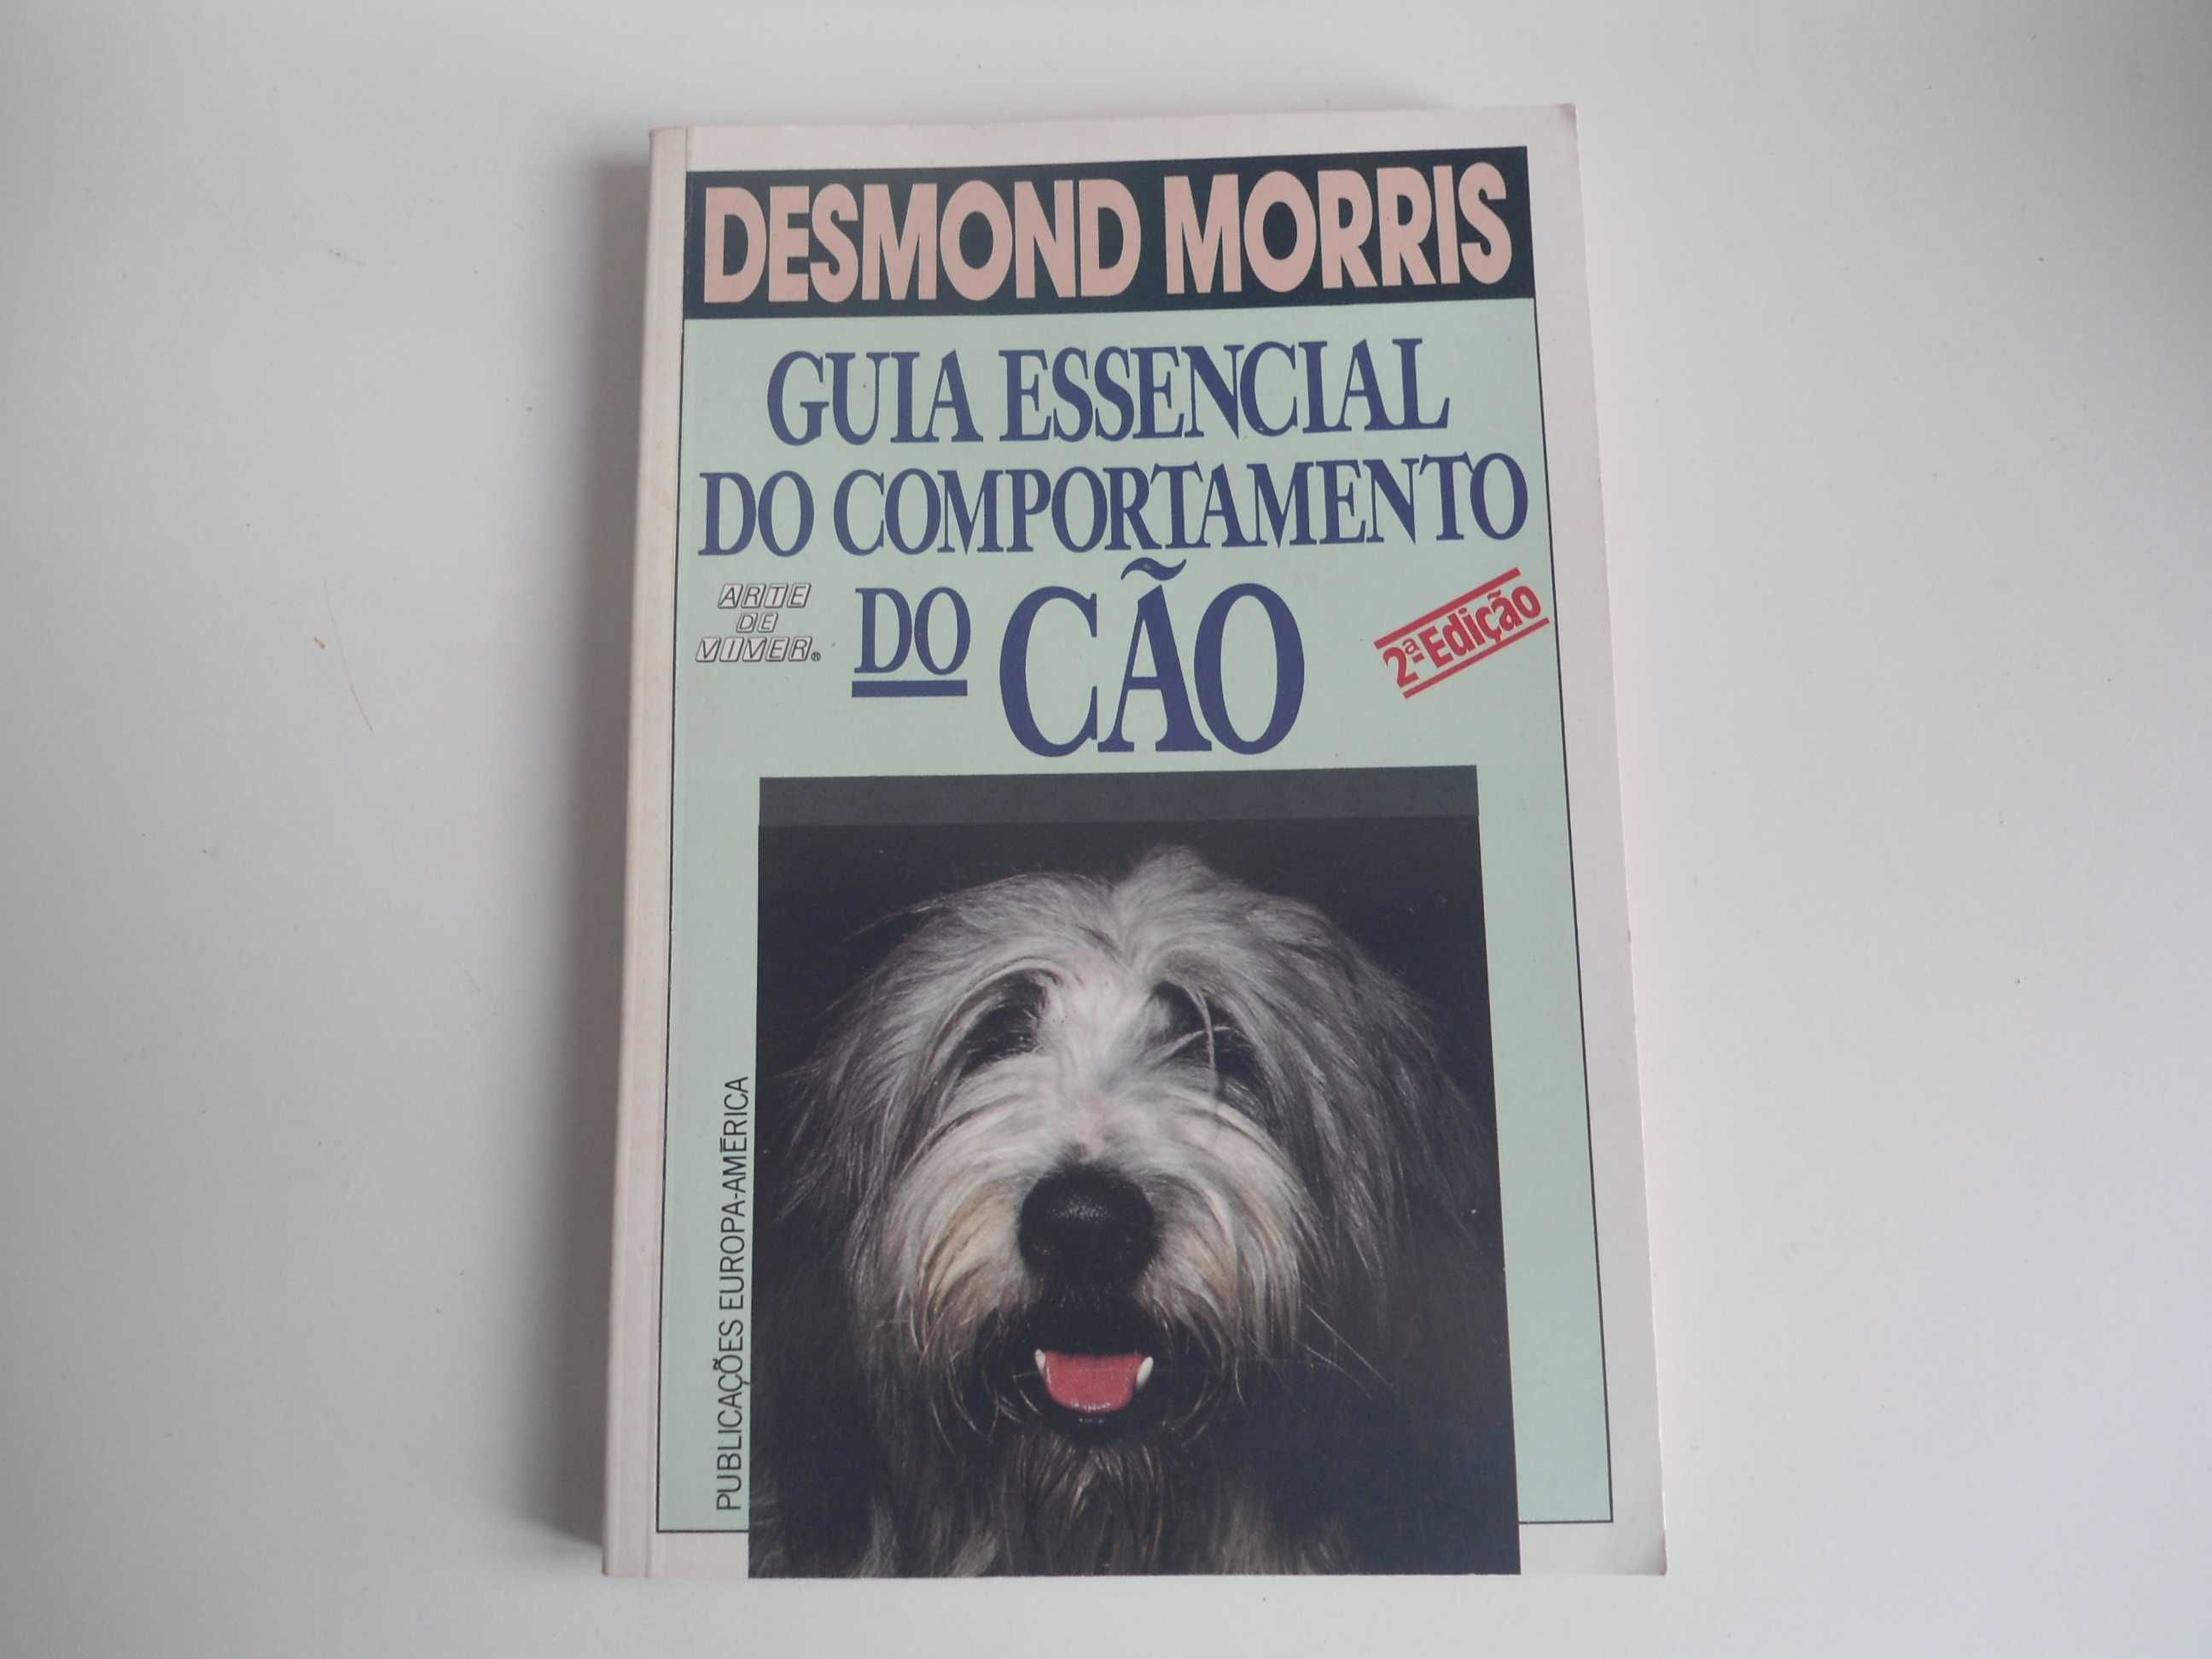 Guia Essencial do comportamento do cão de Desmond Morris